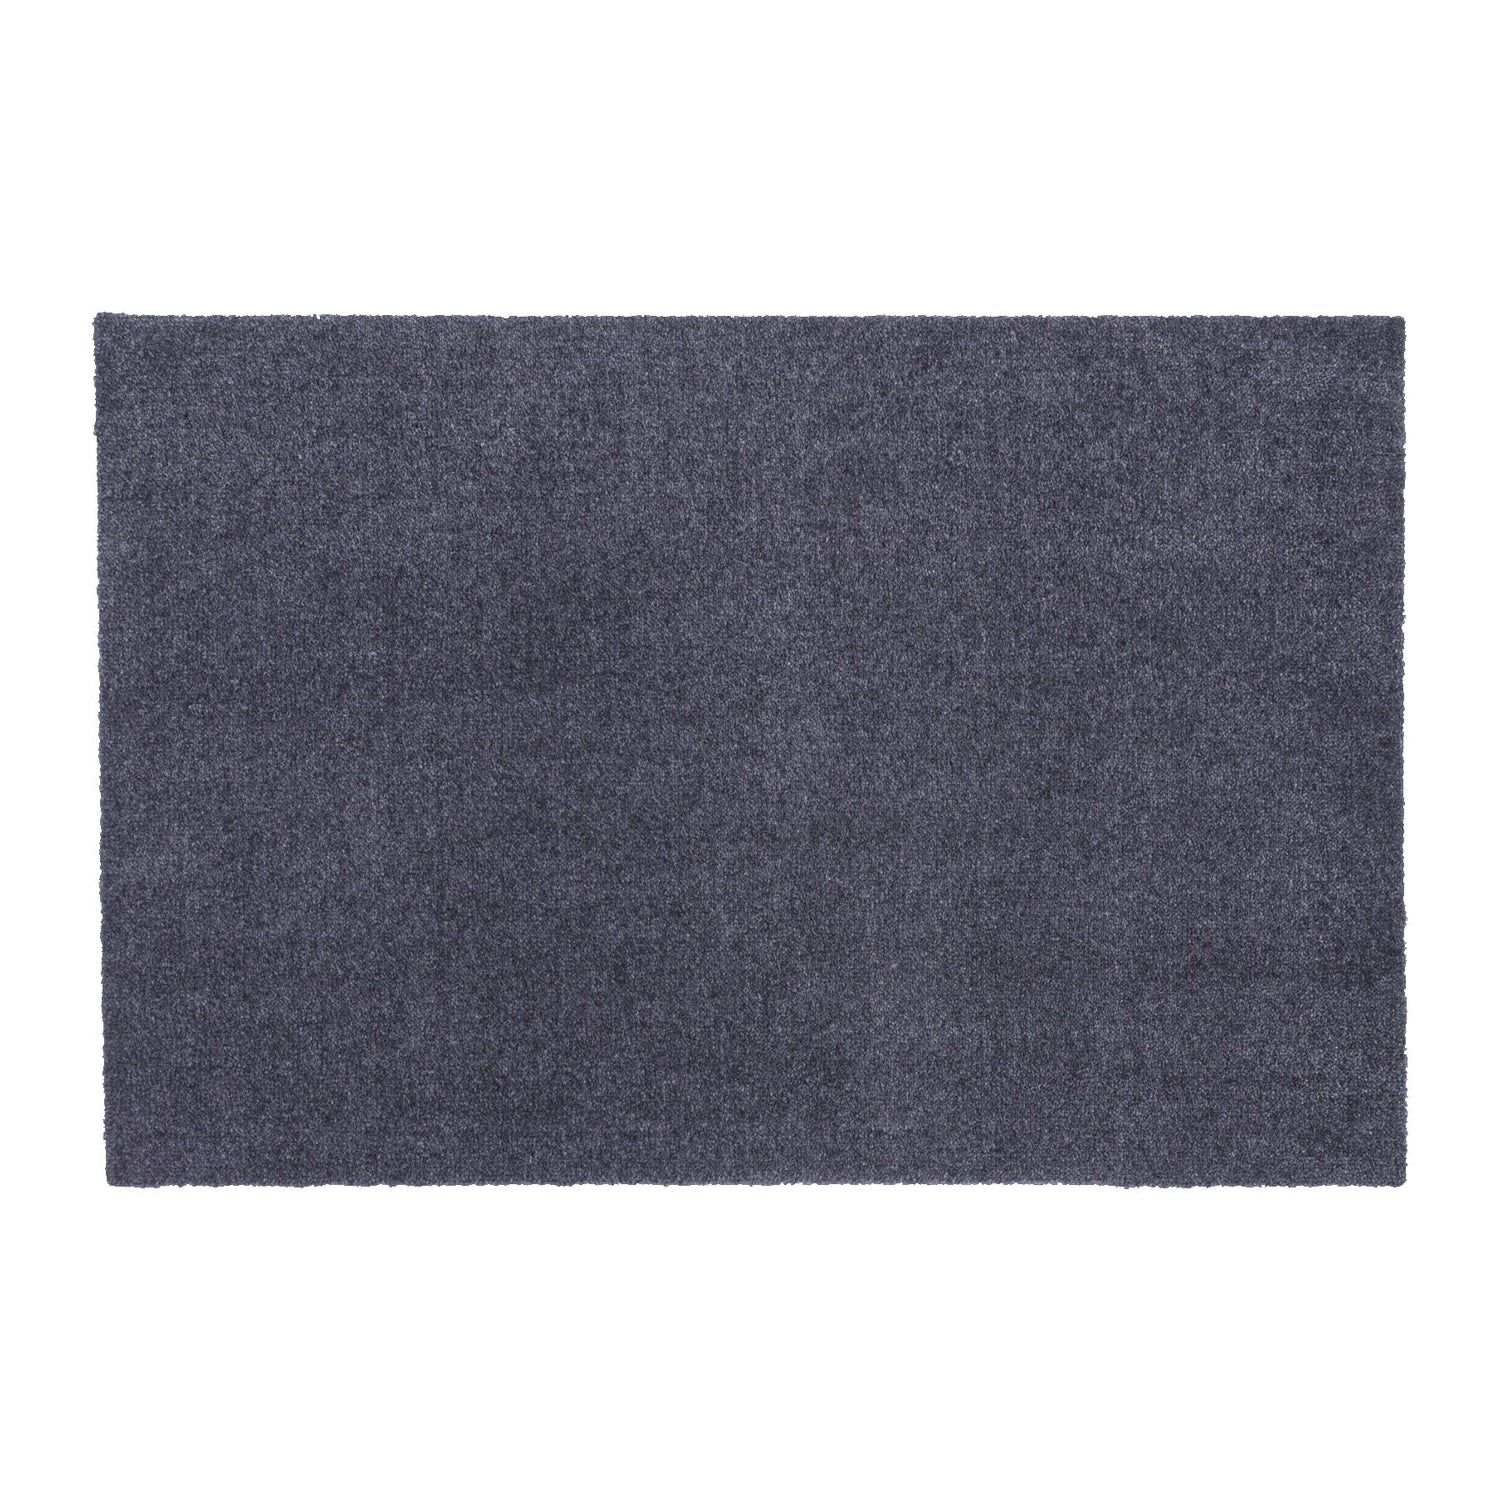 Bodenmatte 60 x 90 cm - Uni Farbe/Grau